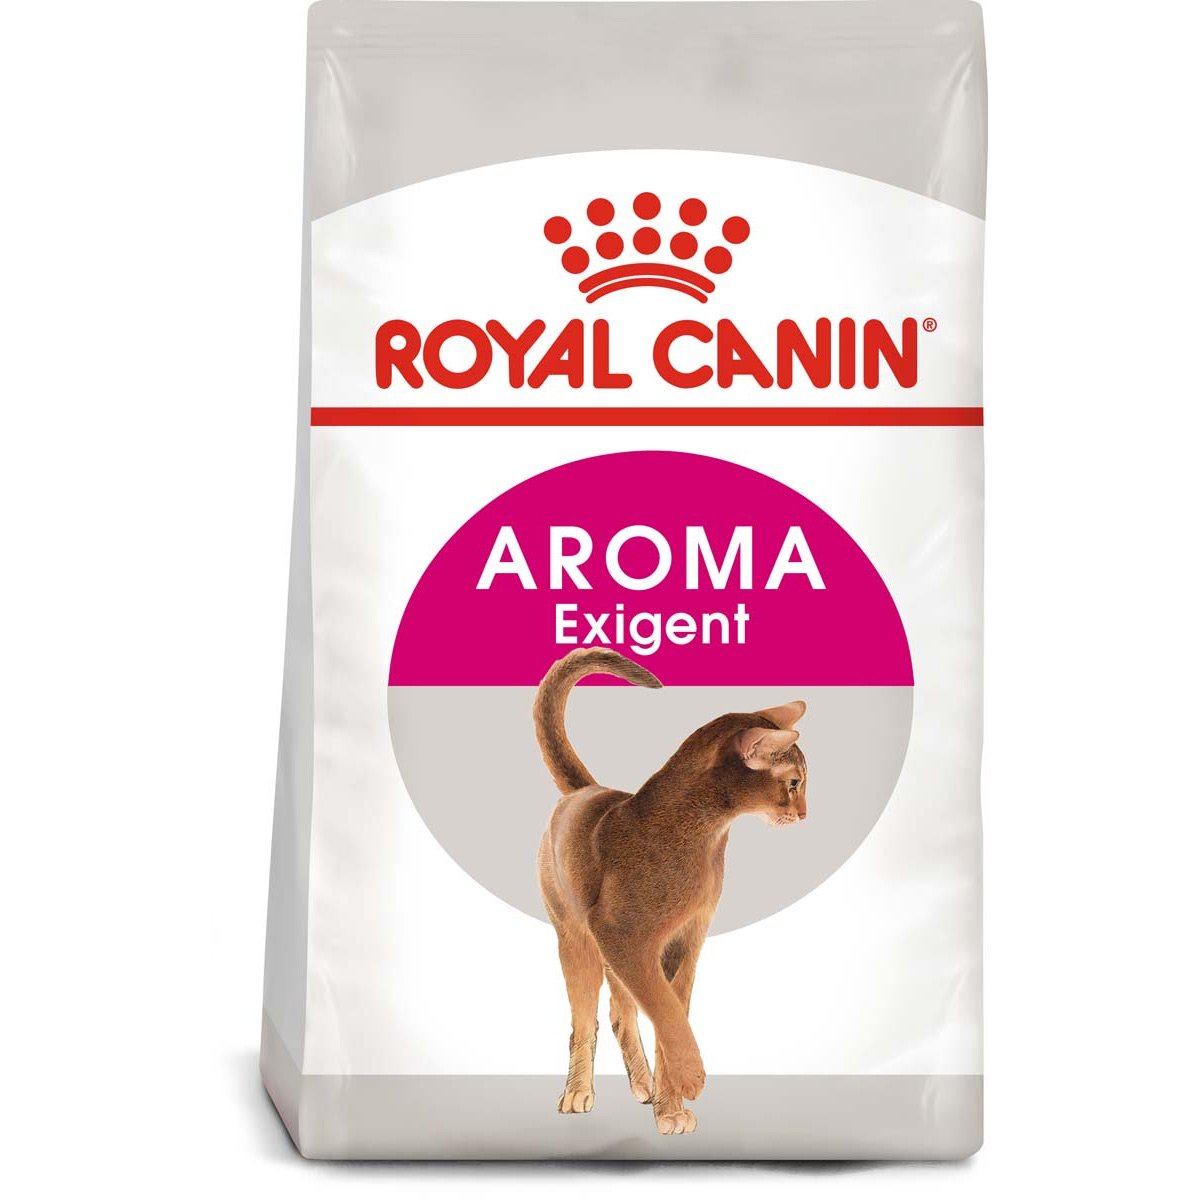 ROYAL CANIN AROMA EXIGENT Trockenfutter für wählerische Katzen 10kg von Royal Canin